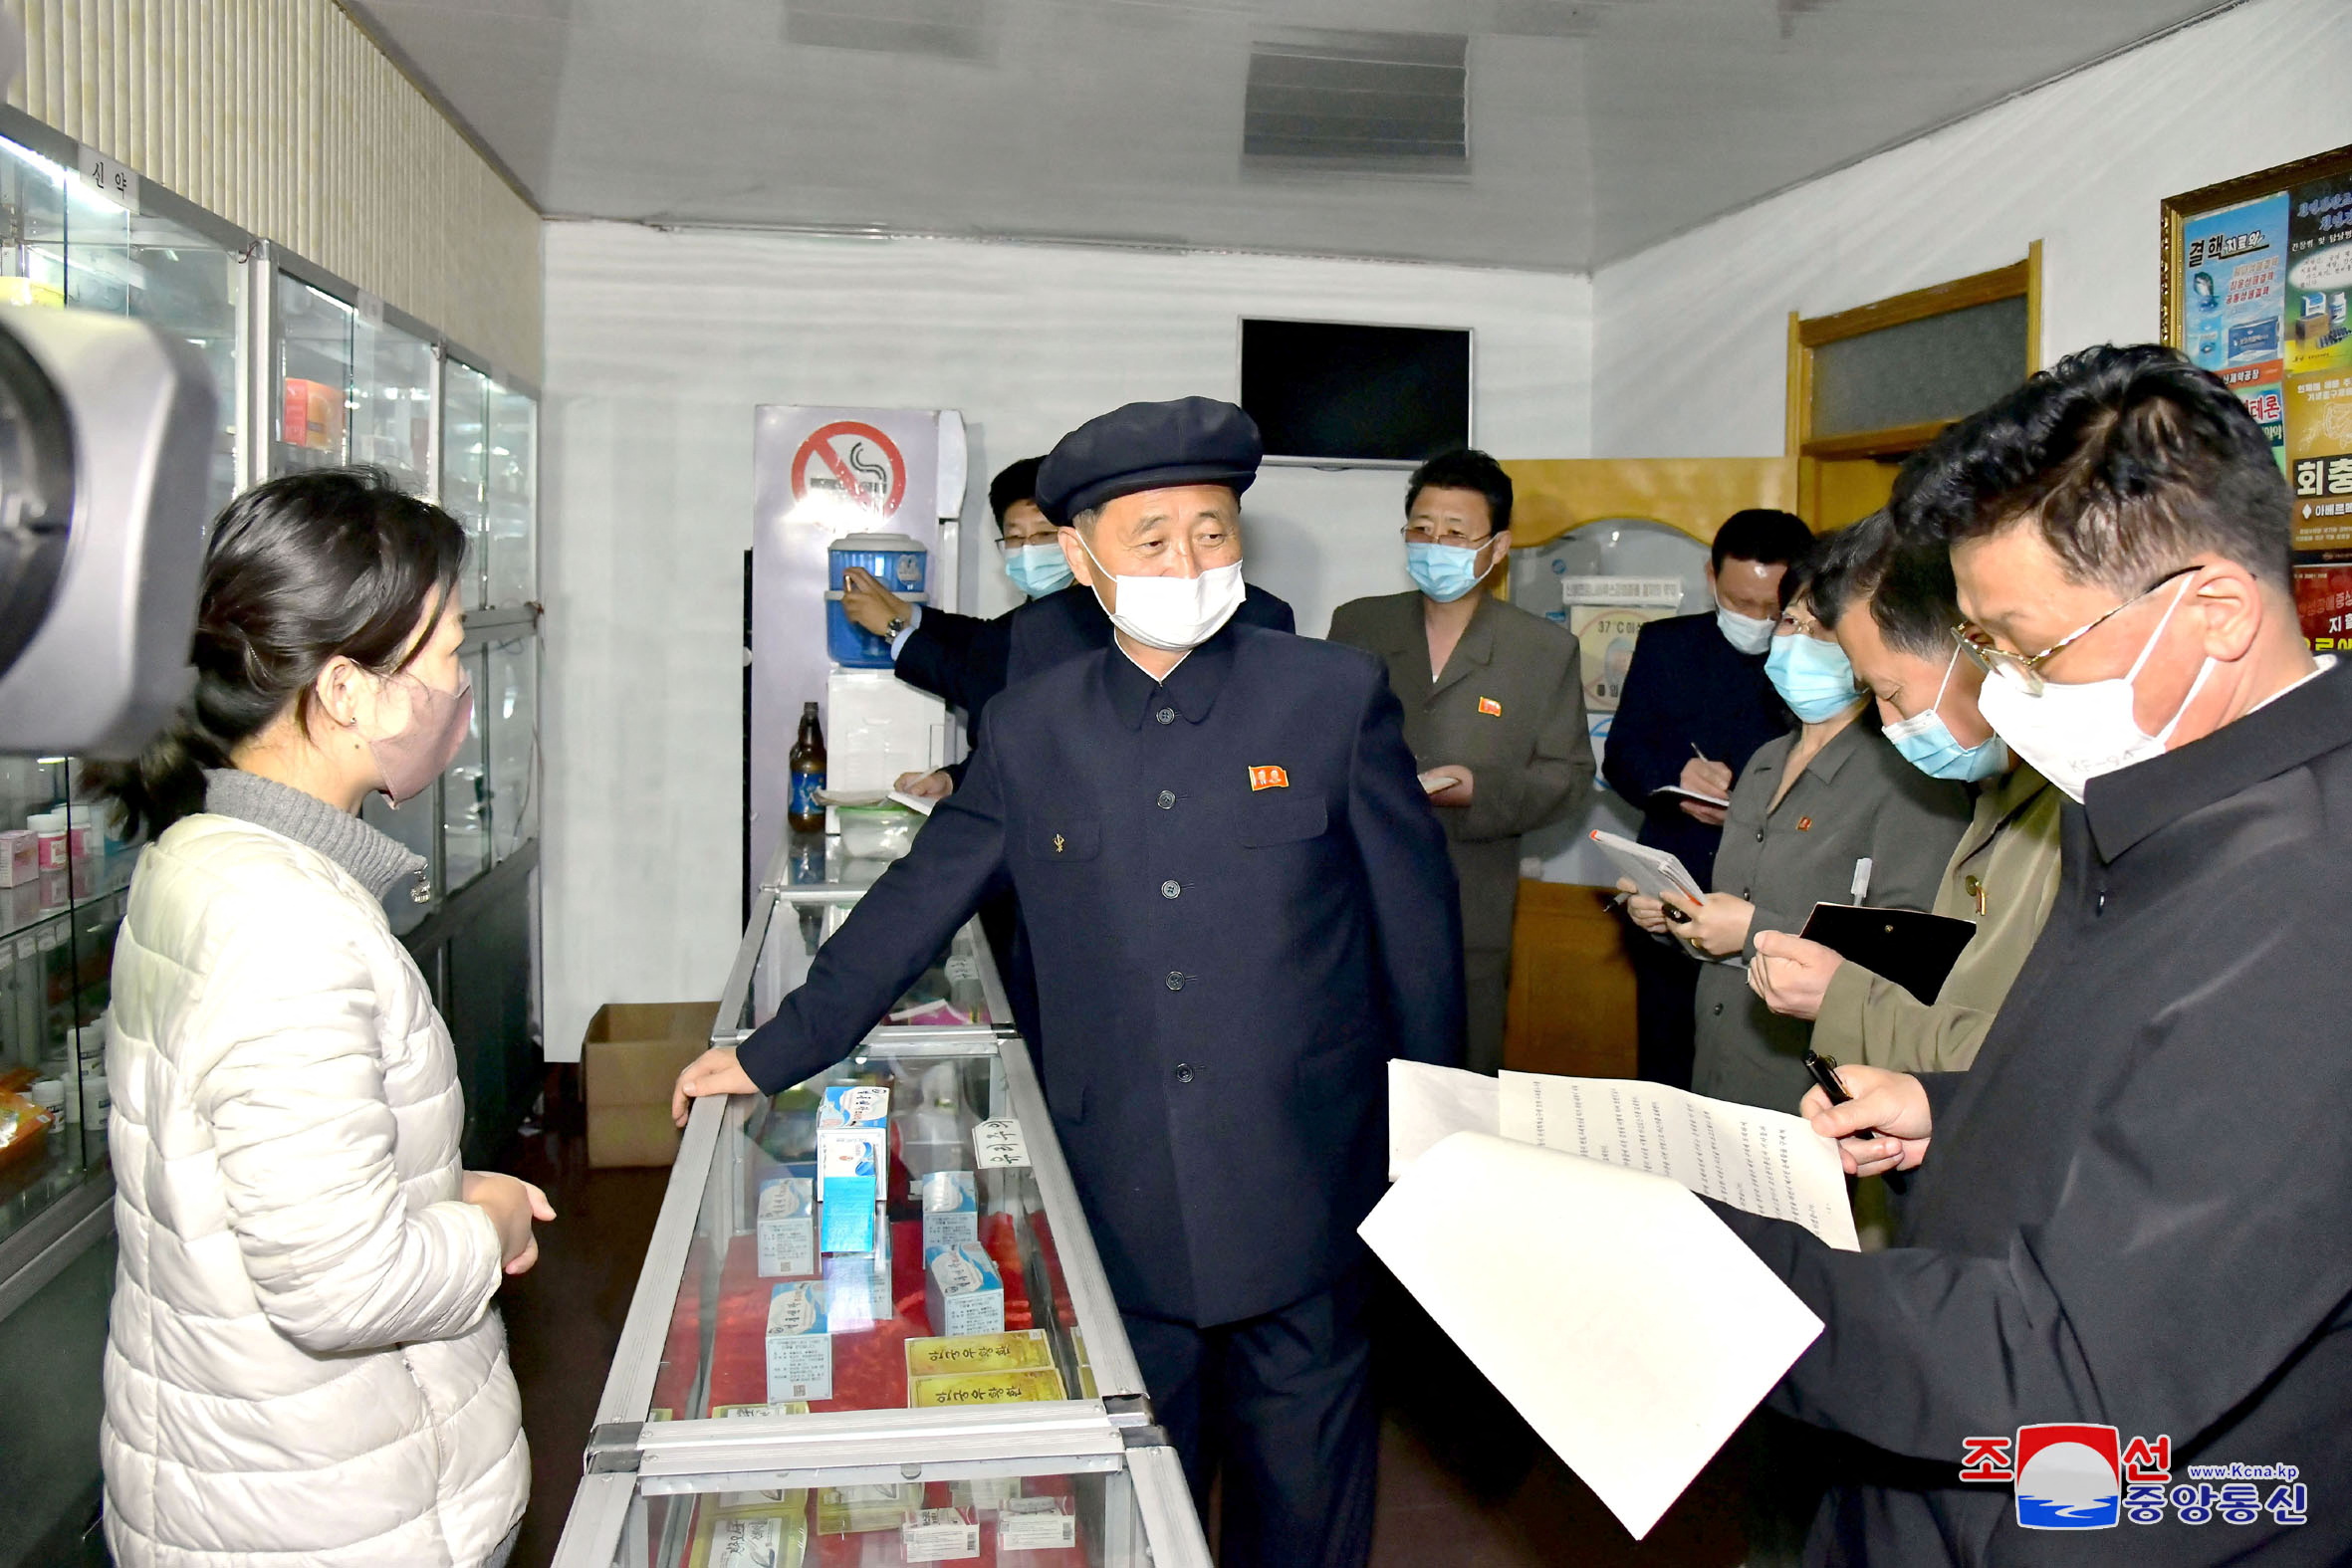 El primer ministro de Corea del Norte, Kim Tok Hun, inspecciona una farmacia en medio de la pandemia de la enfermedad por coronavirus (COVID-19), en Pyongyang, Corea del Norte, en esta foto sin fecha publicada el 17 de mayo de 2022 por la Agencia Central de Noticias de Corea del Norte (KCNA). KCNA vía REUTERS 